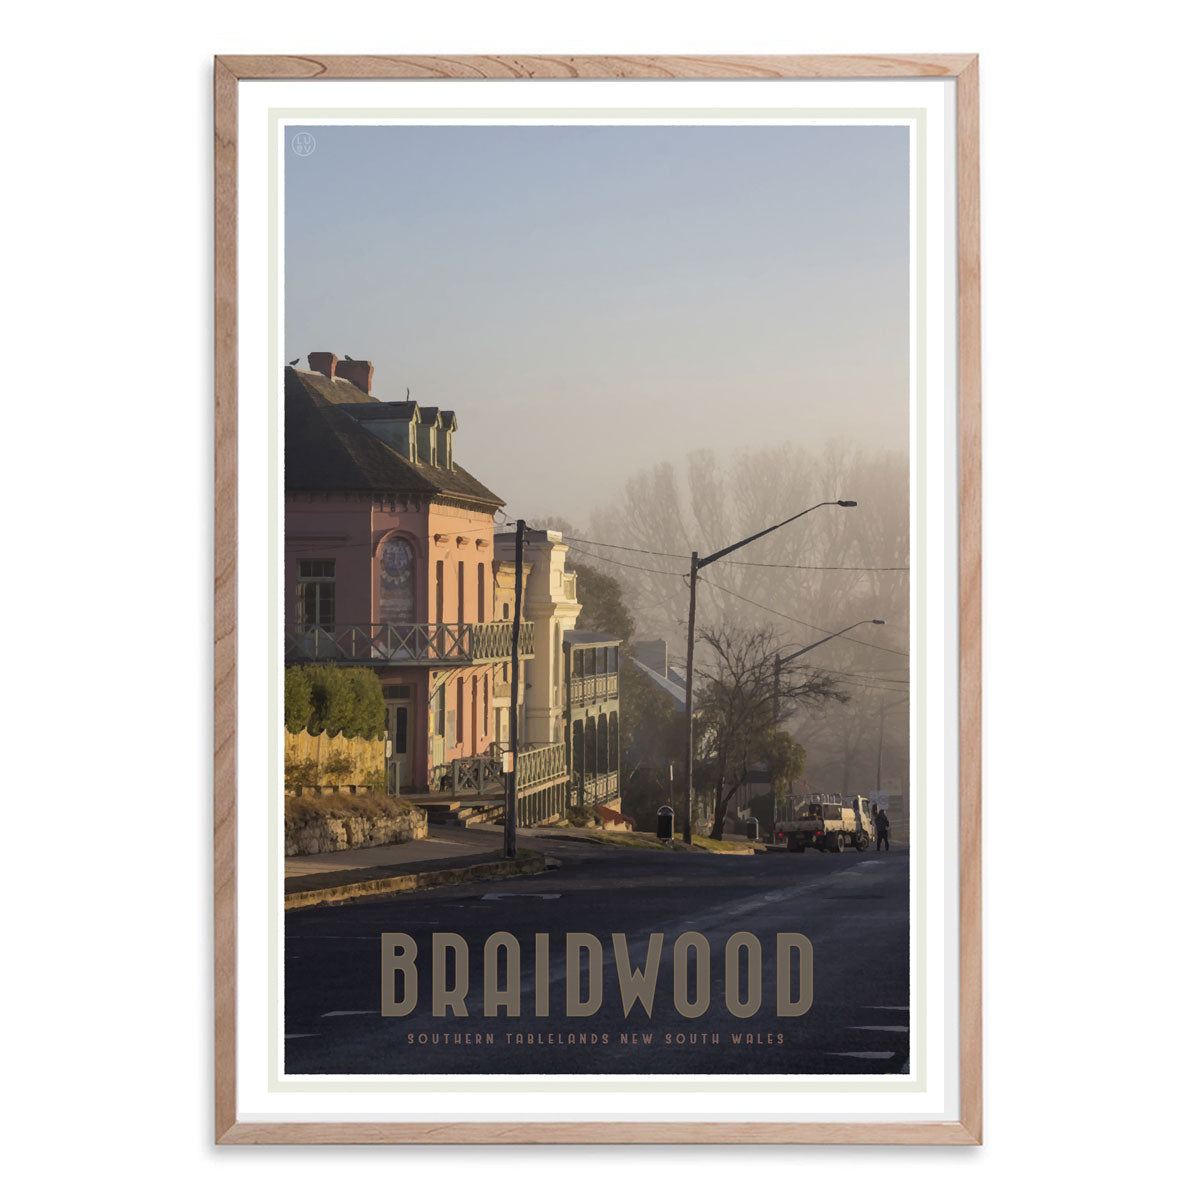 Braidwood Street oak framed vintage travel style poster. Original design Places We Luv